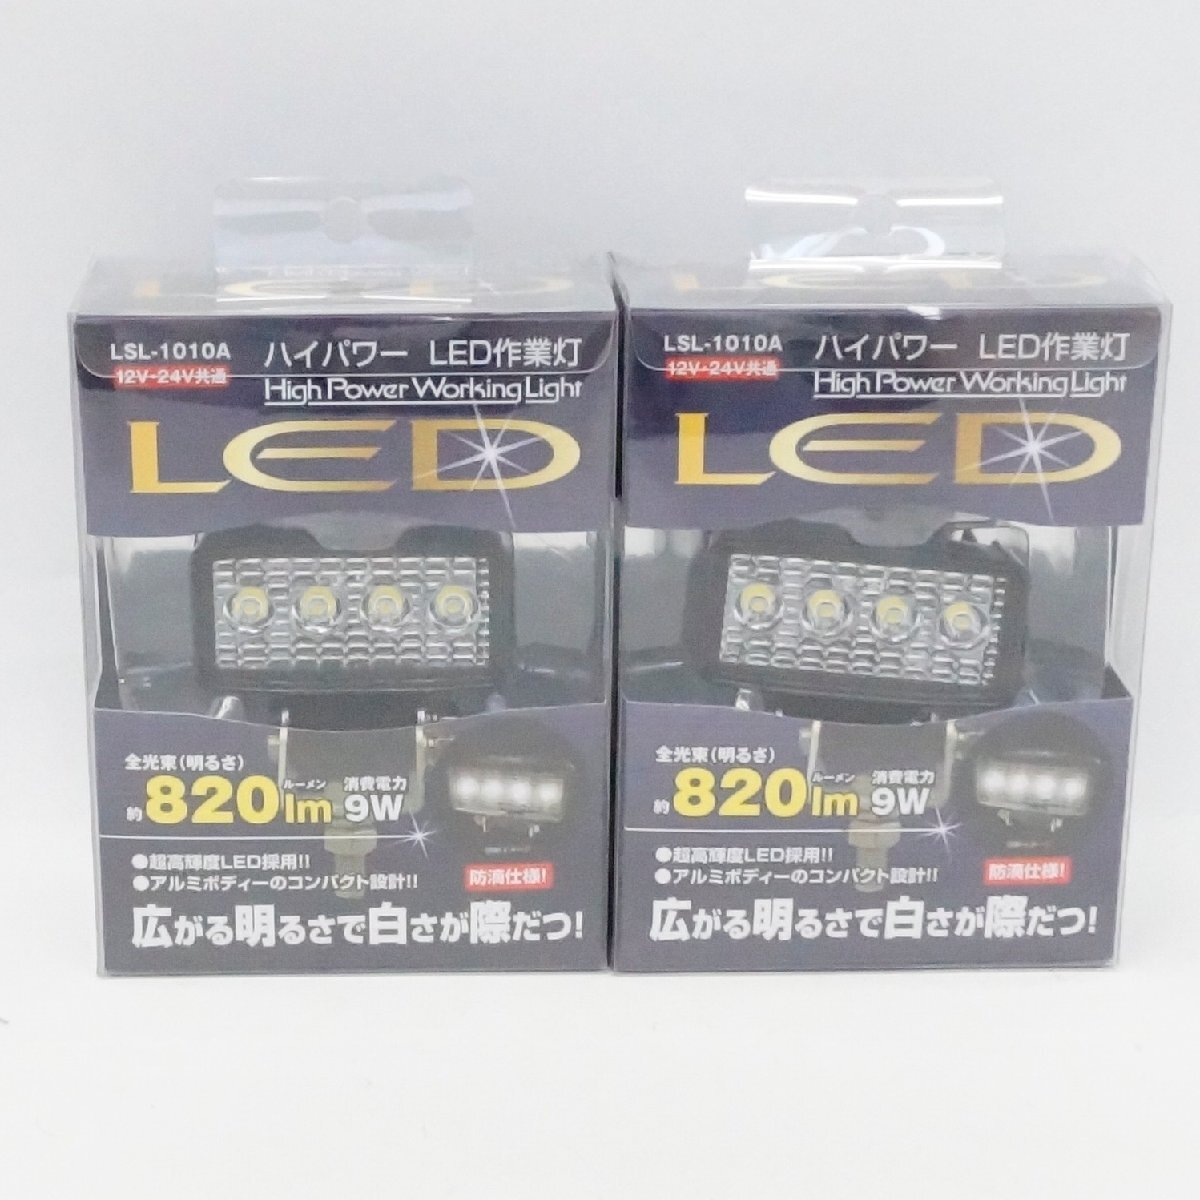 未使用 日本ボデーパーツ工業株式会社 ハイパワー LED 作業灯 LSL-1010A 820ルーメン 12V 24V共通 2個の画像1